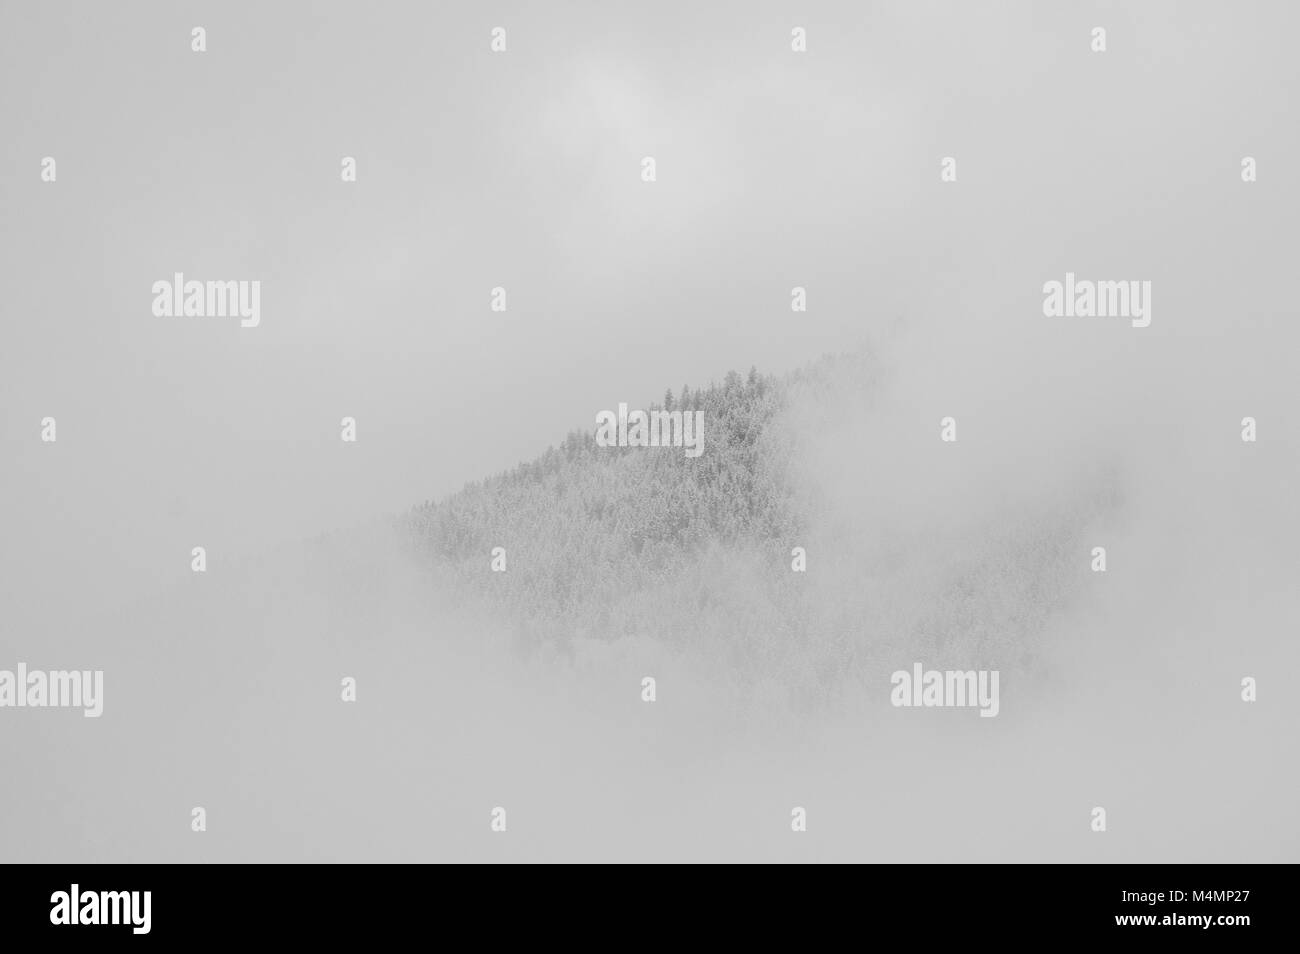 Bergrücken mit Frost und Schnee bedeckt Bäume durch Wolken und Nebel in Schwarzweiß umgeben. Stockfoto